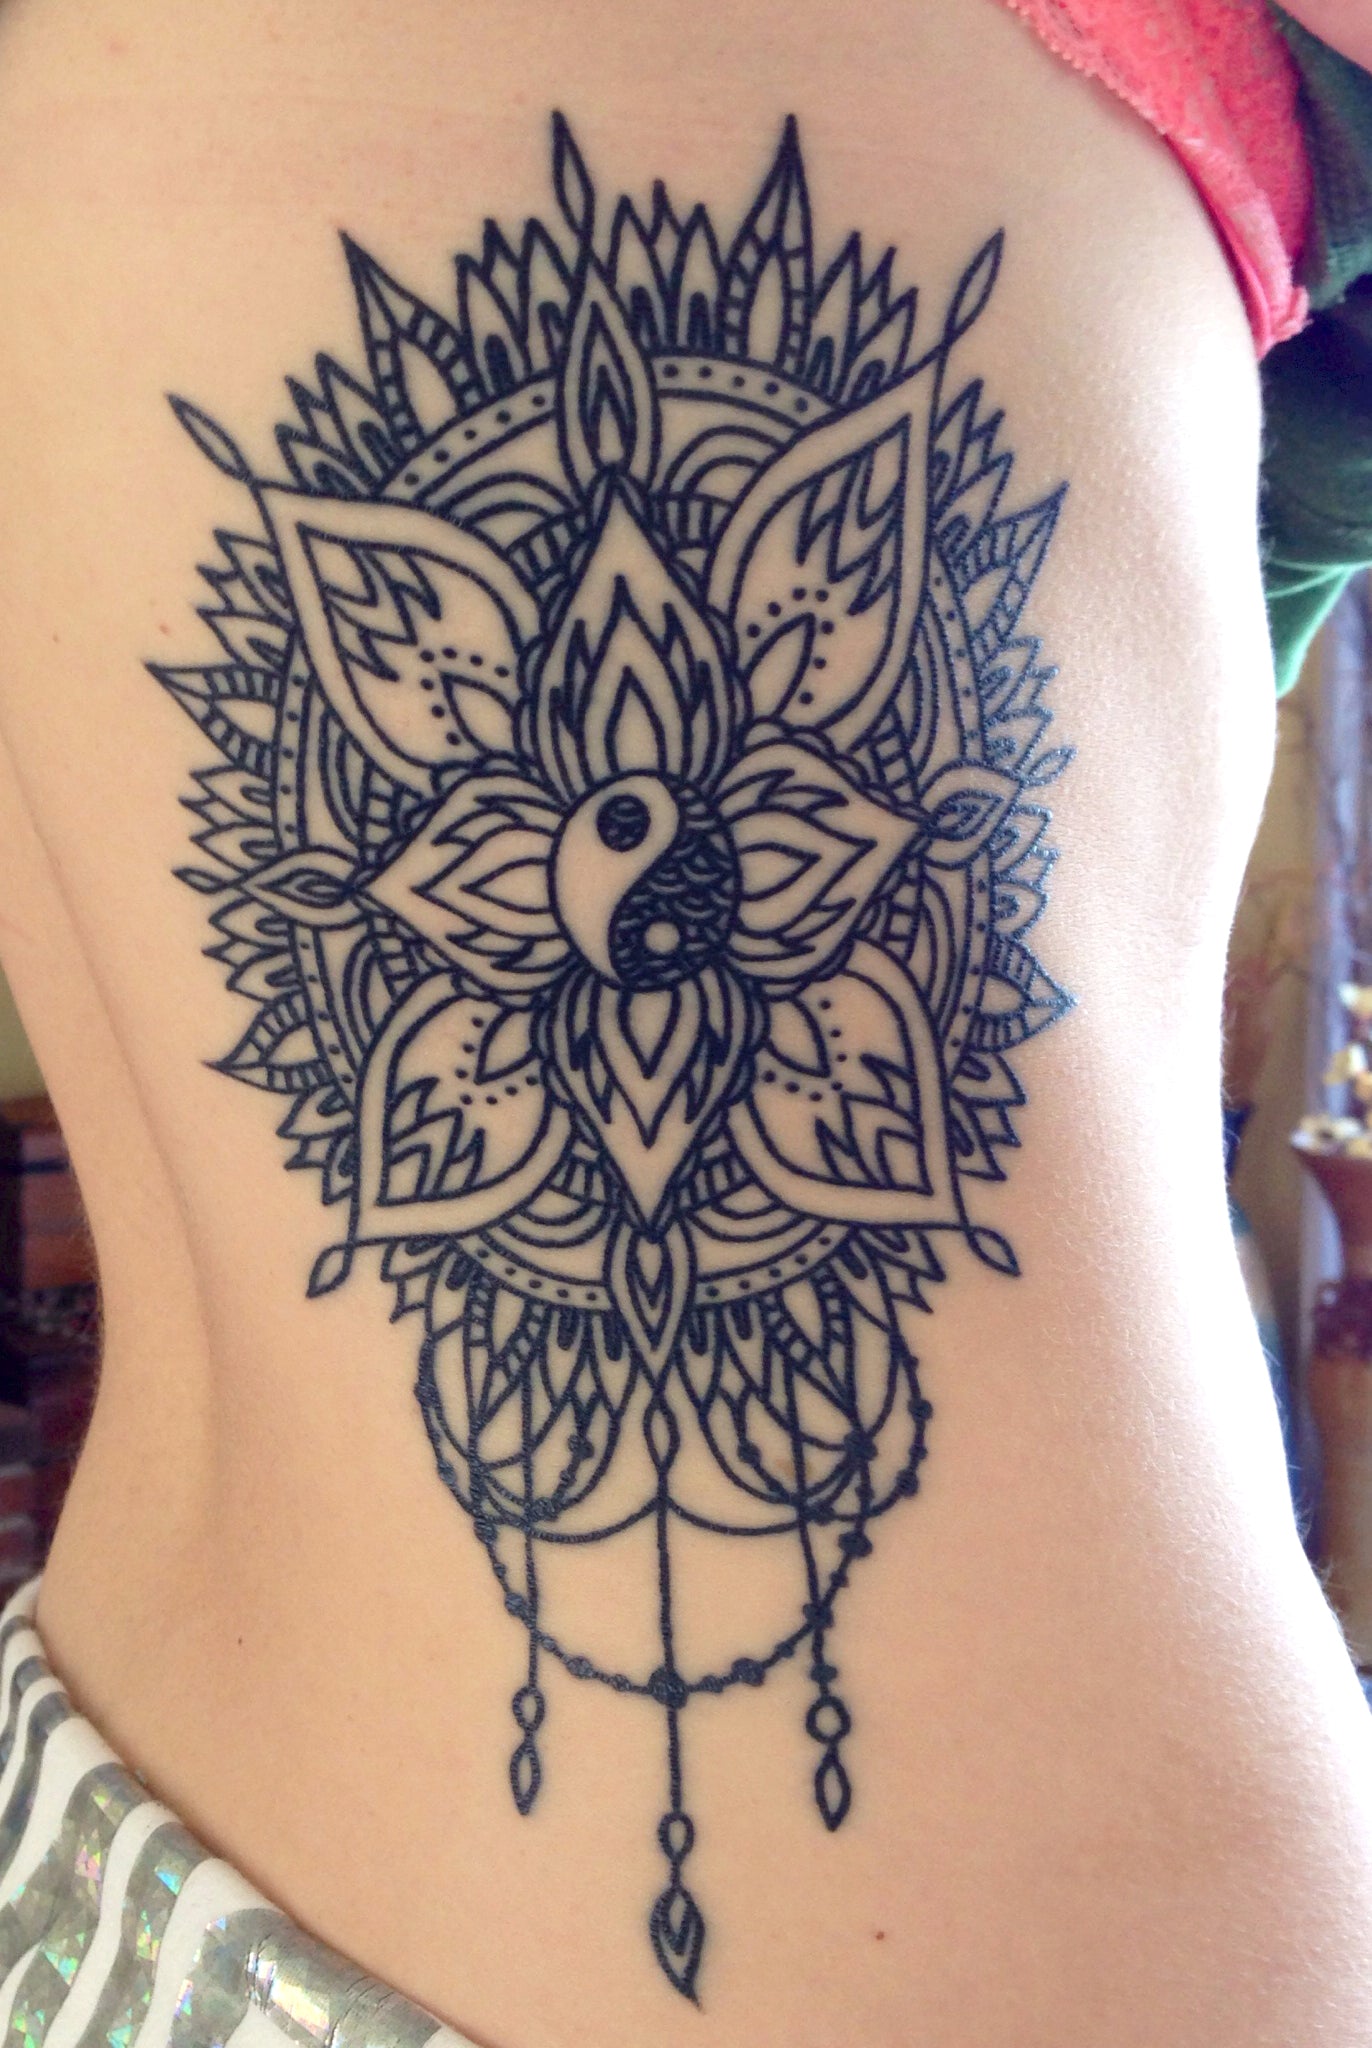 Tribal Lotus Ying Yang Rib Tattoo Ideas for Women - Flower Chandelier Side Tatt -  ideas de tatuaje de costillas de loto para las mujeres - www.MyBodiArt.com 